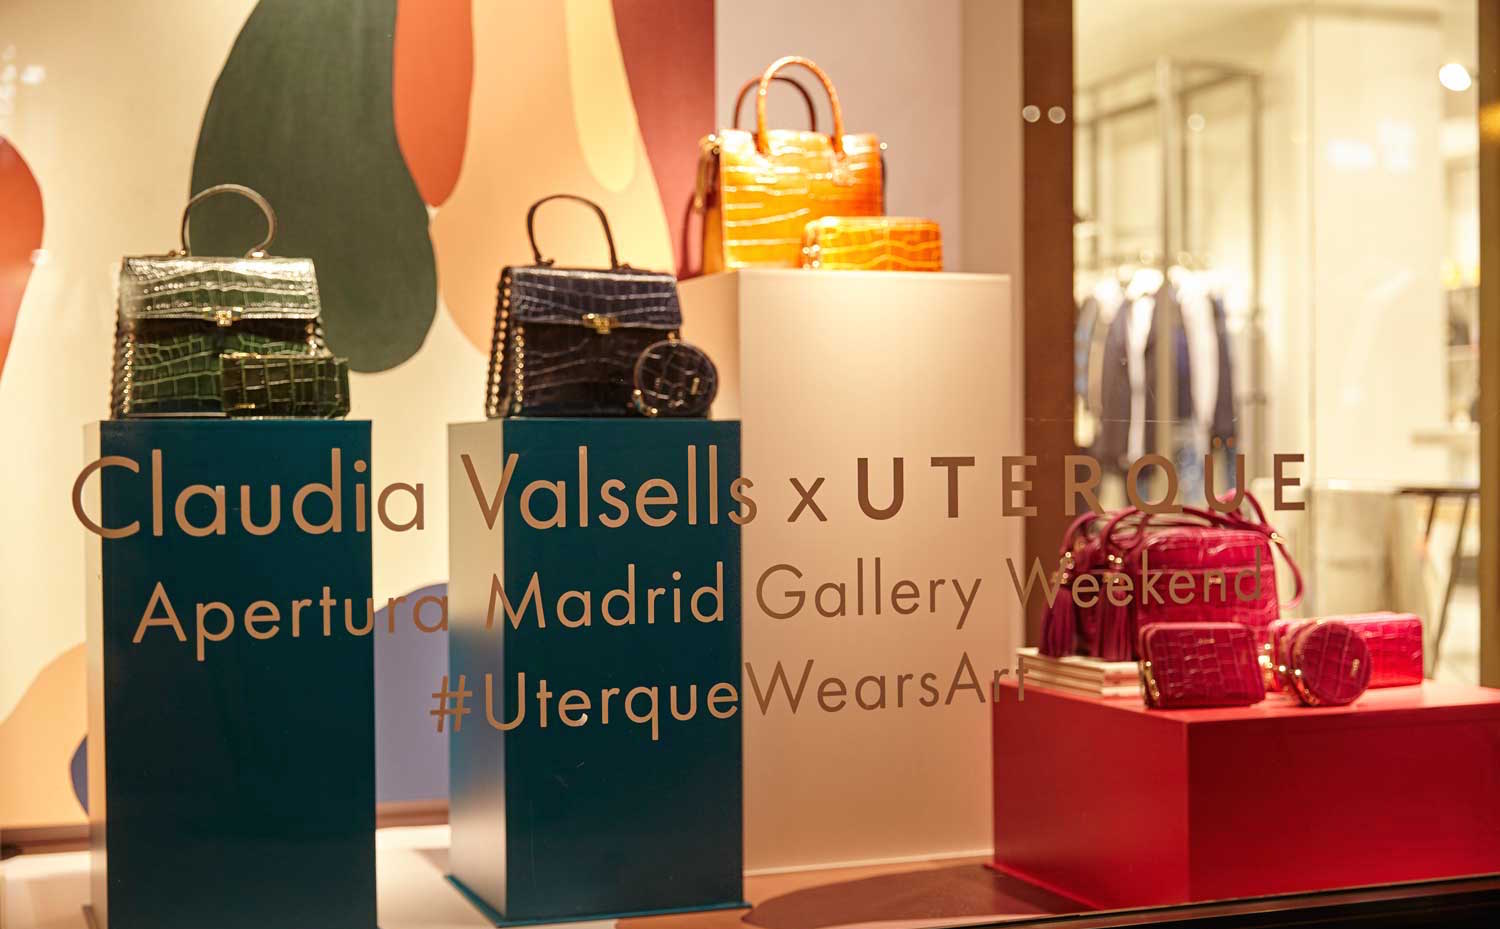 Escaparate de la tienda de Uterqüe en Madrid con obras de Claudia Valsells